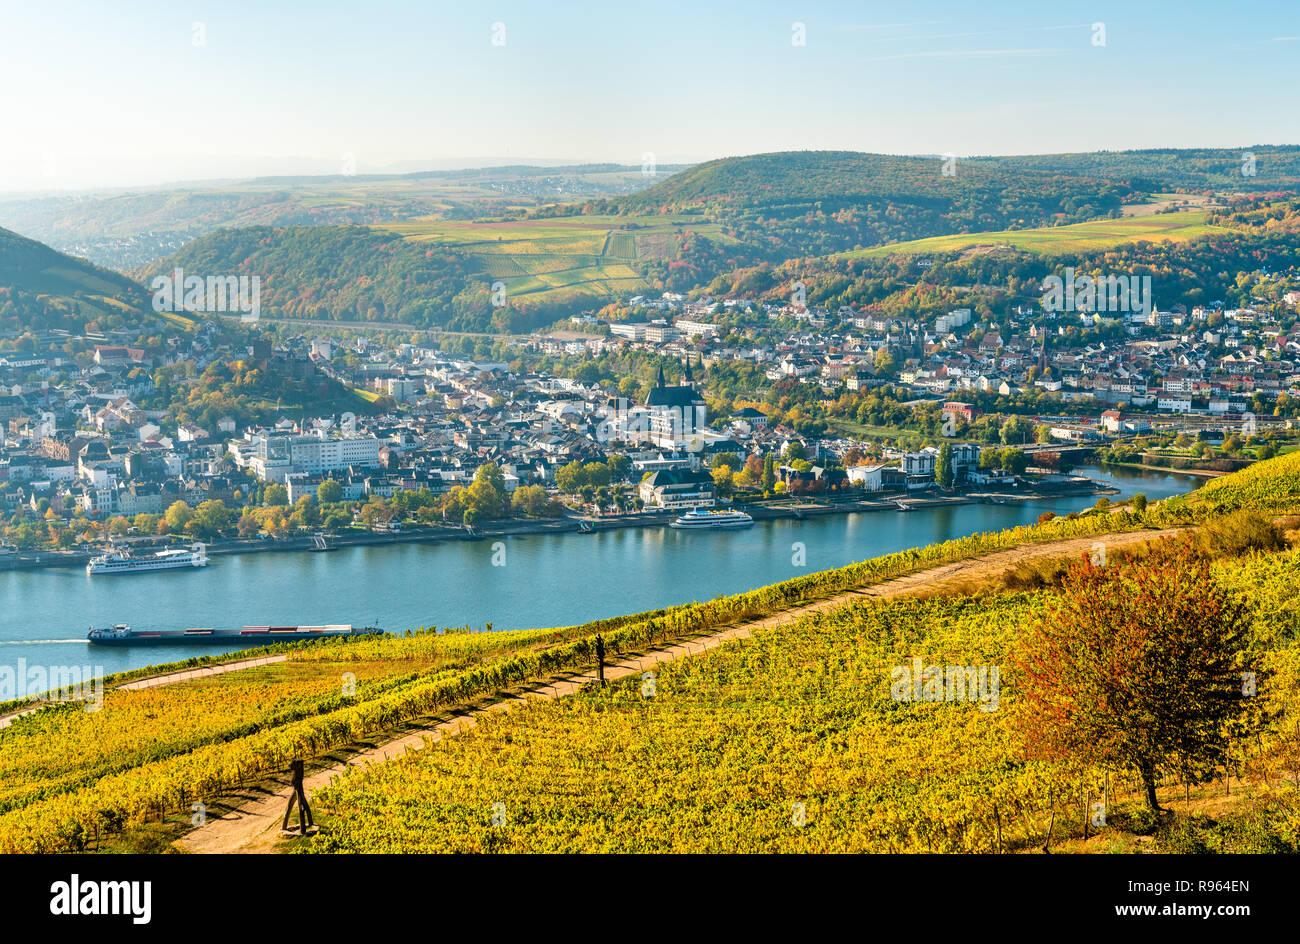 Avis de Bingen am Rhein du Rudesheim vignobles dans la vallée du Rhin, Allemagne Banque D'Images